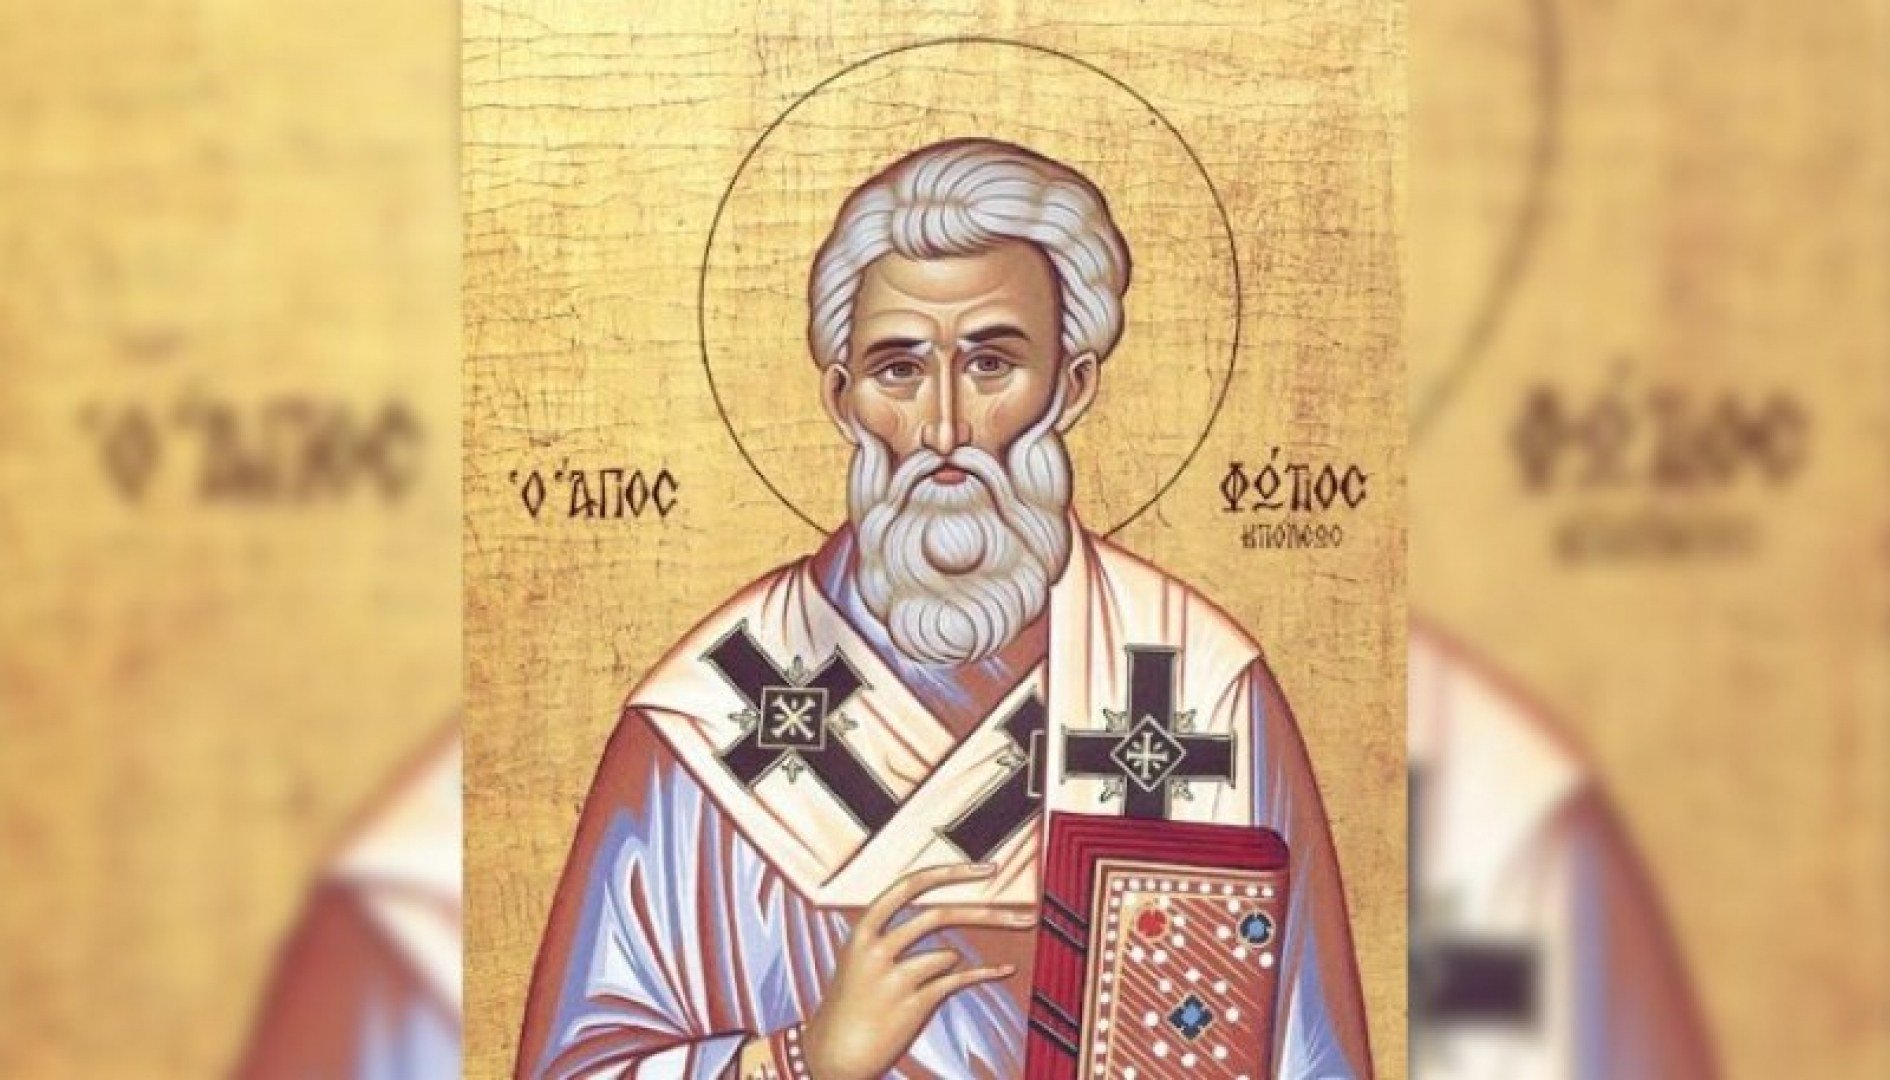 Св. Фотий, патриарх ЦариградскиПравославната църква чества днес Св. Фотий (от